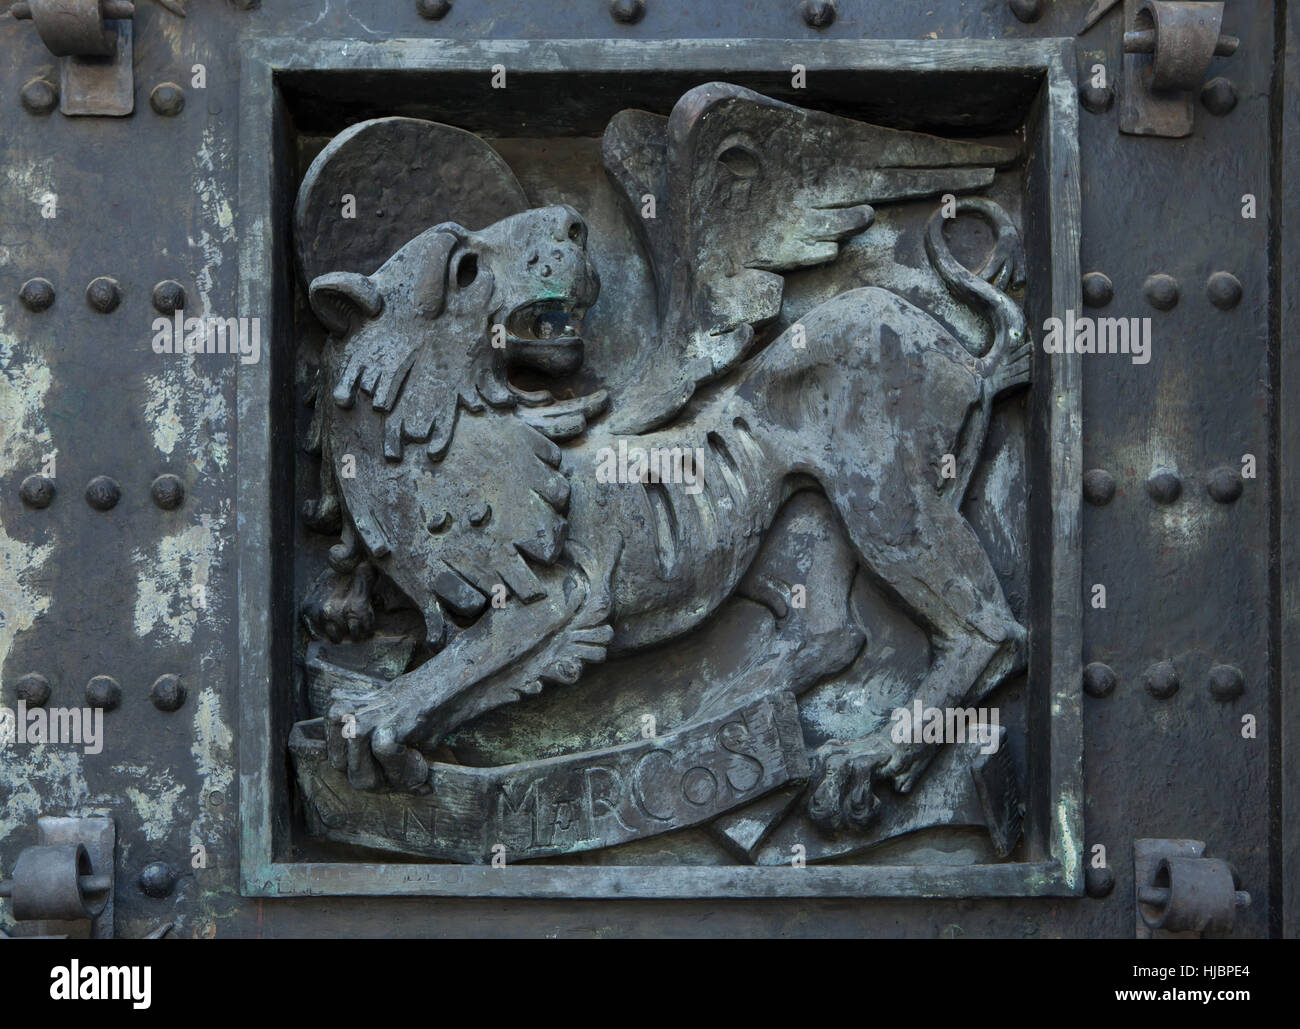 Lion ailé de Saint Marc. Détail de la porte de bronze de la Basilique de la Santa Cruz (Basilique de la Sainte Croix) dans le Valle de los Caidos (vallée de l'armée déchue) près de Madrid, Espagne. Banque D'Images